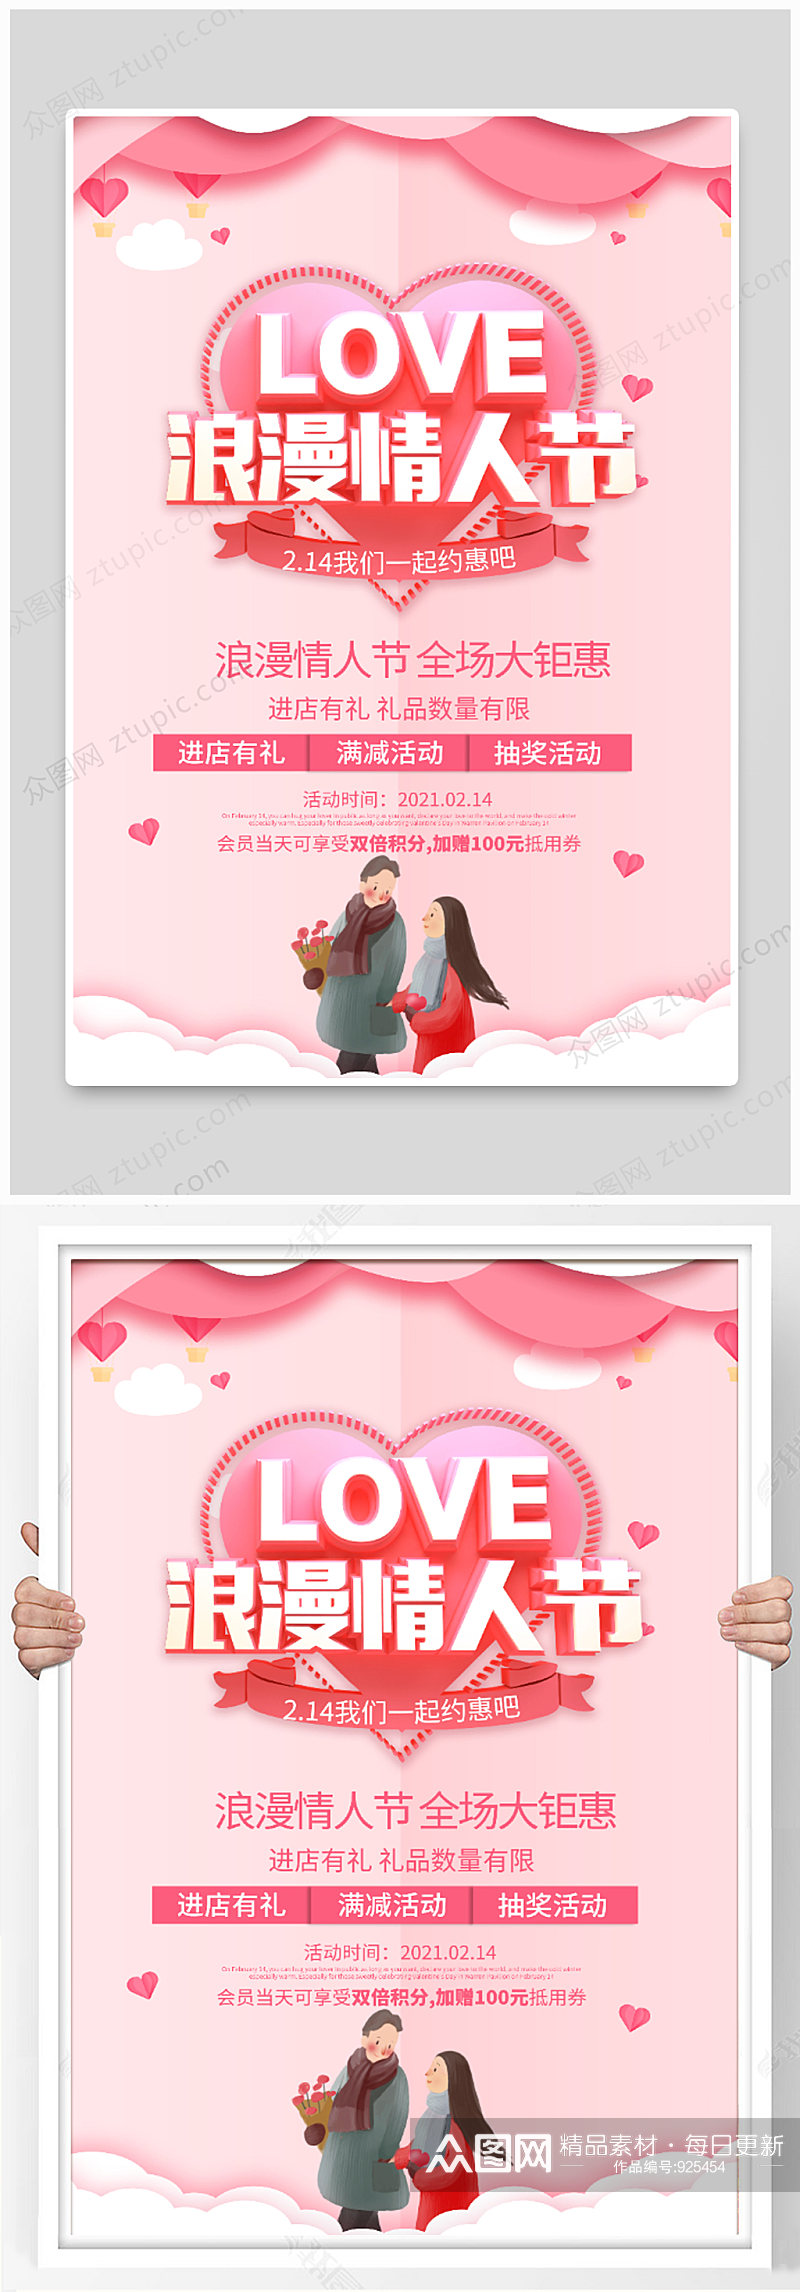 情人节全城巨惠海报设计素材